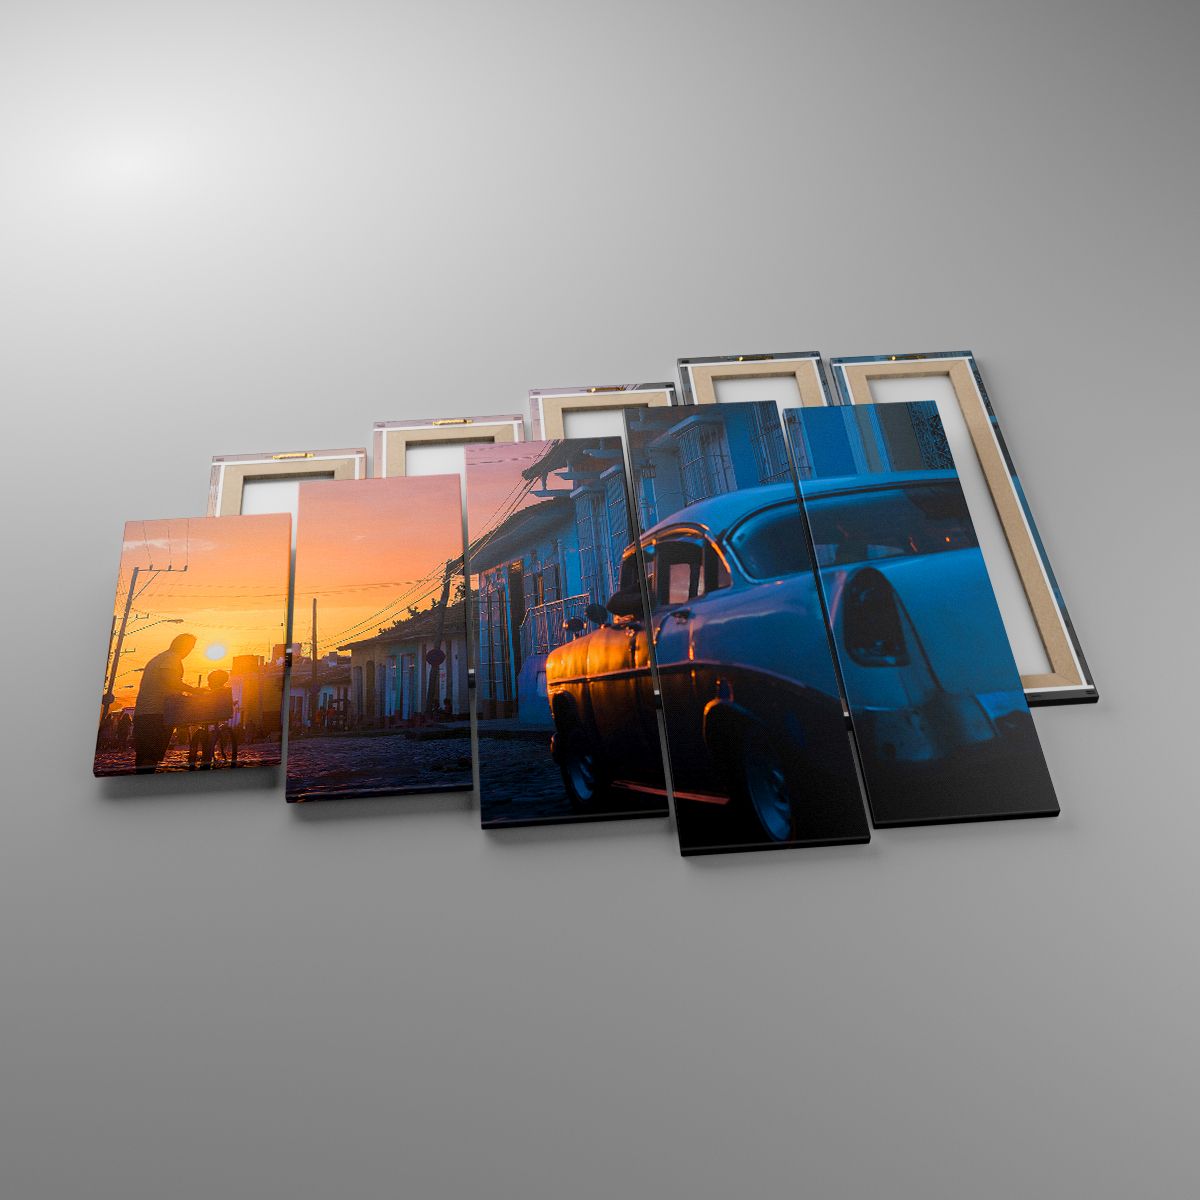 Leinwandbild Retro-Auto, Leinwandbild Die Architektur, Leinwandbild Kuba, Leinwandbild Reisen, Leinwandbild Der Sonnenuntergang